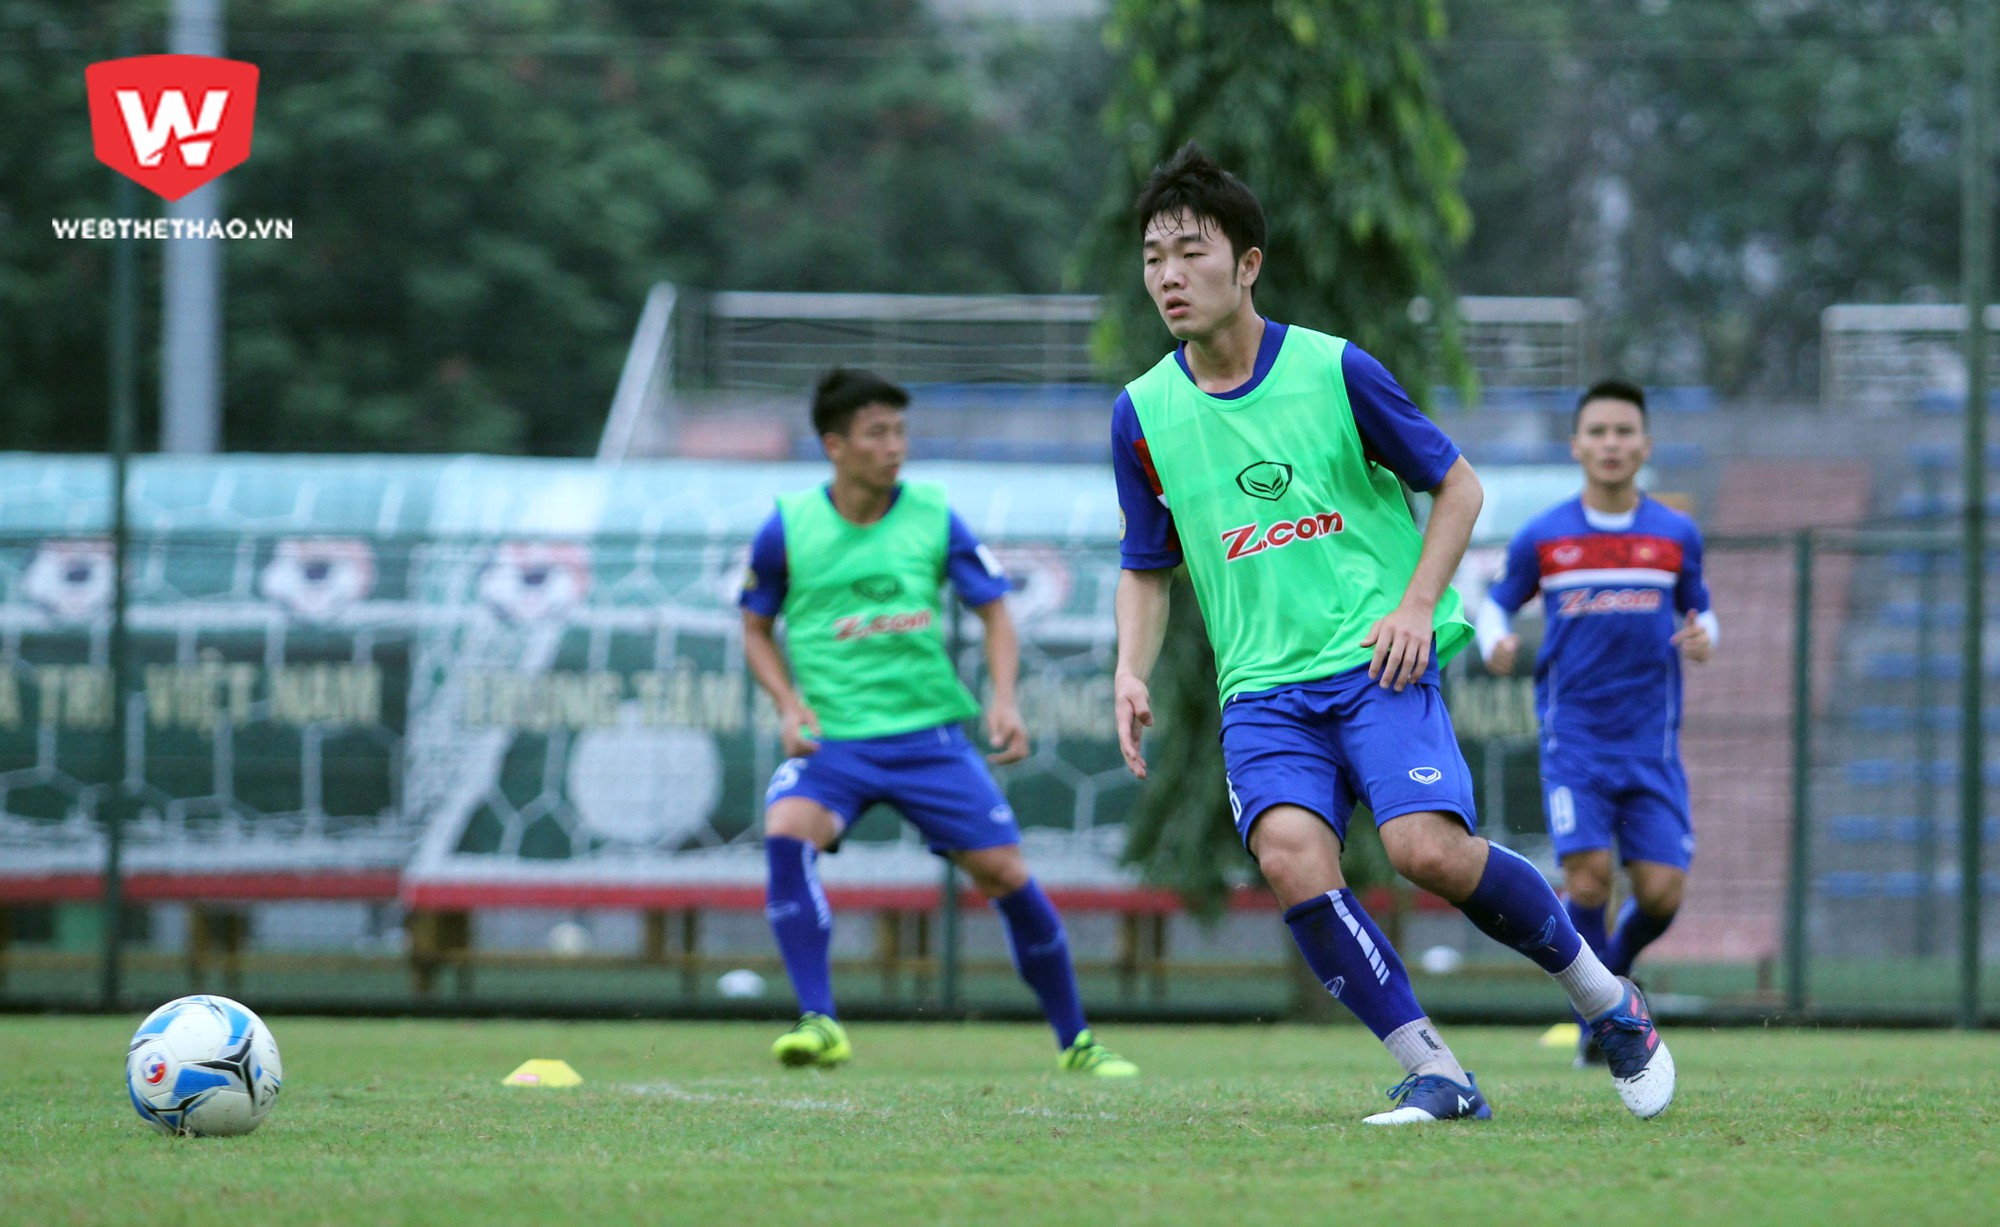 Đinh Thanh Trung cho rằng Xuân Trường là cầu thủ triển vọng và đang nhận được nhiều niềm tin từ tân HLV trưởng đội tuyển Việt Nam. Ảnh: Trung Thu.